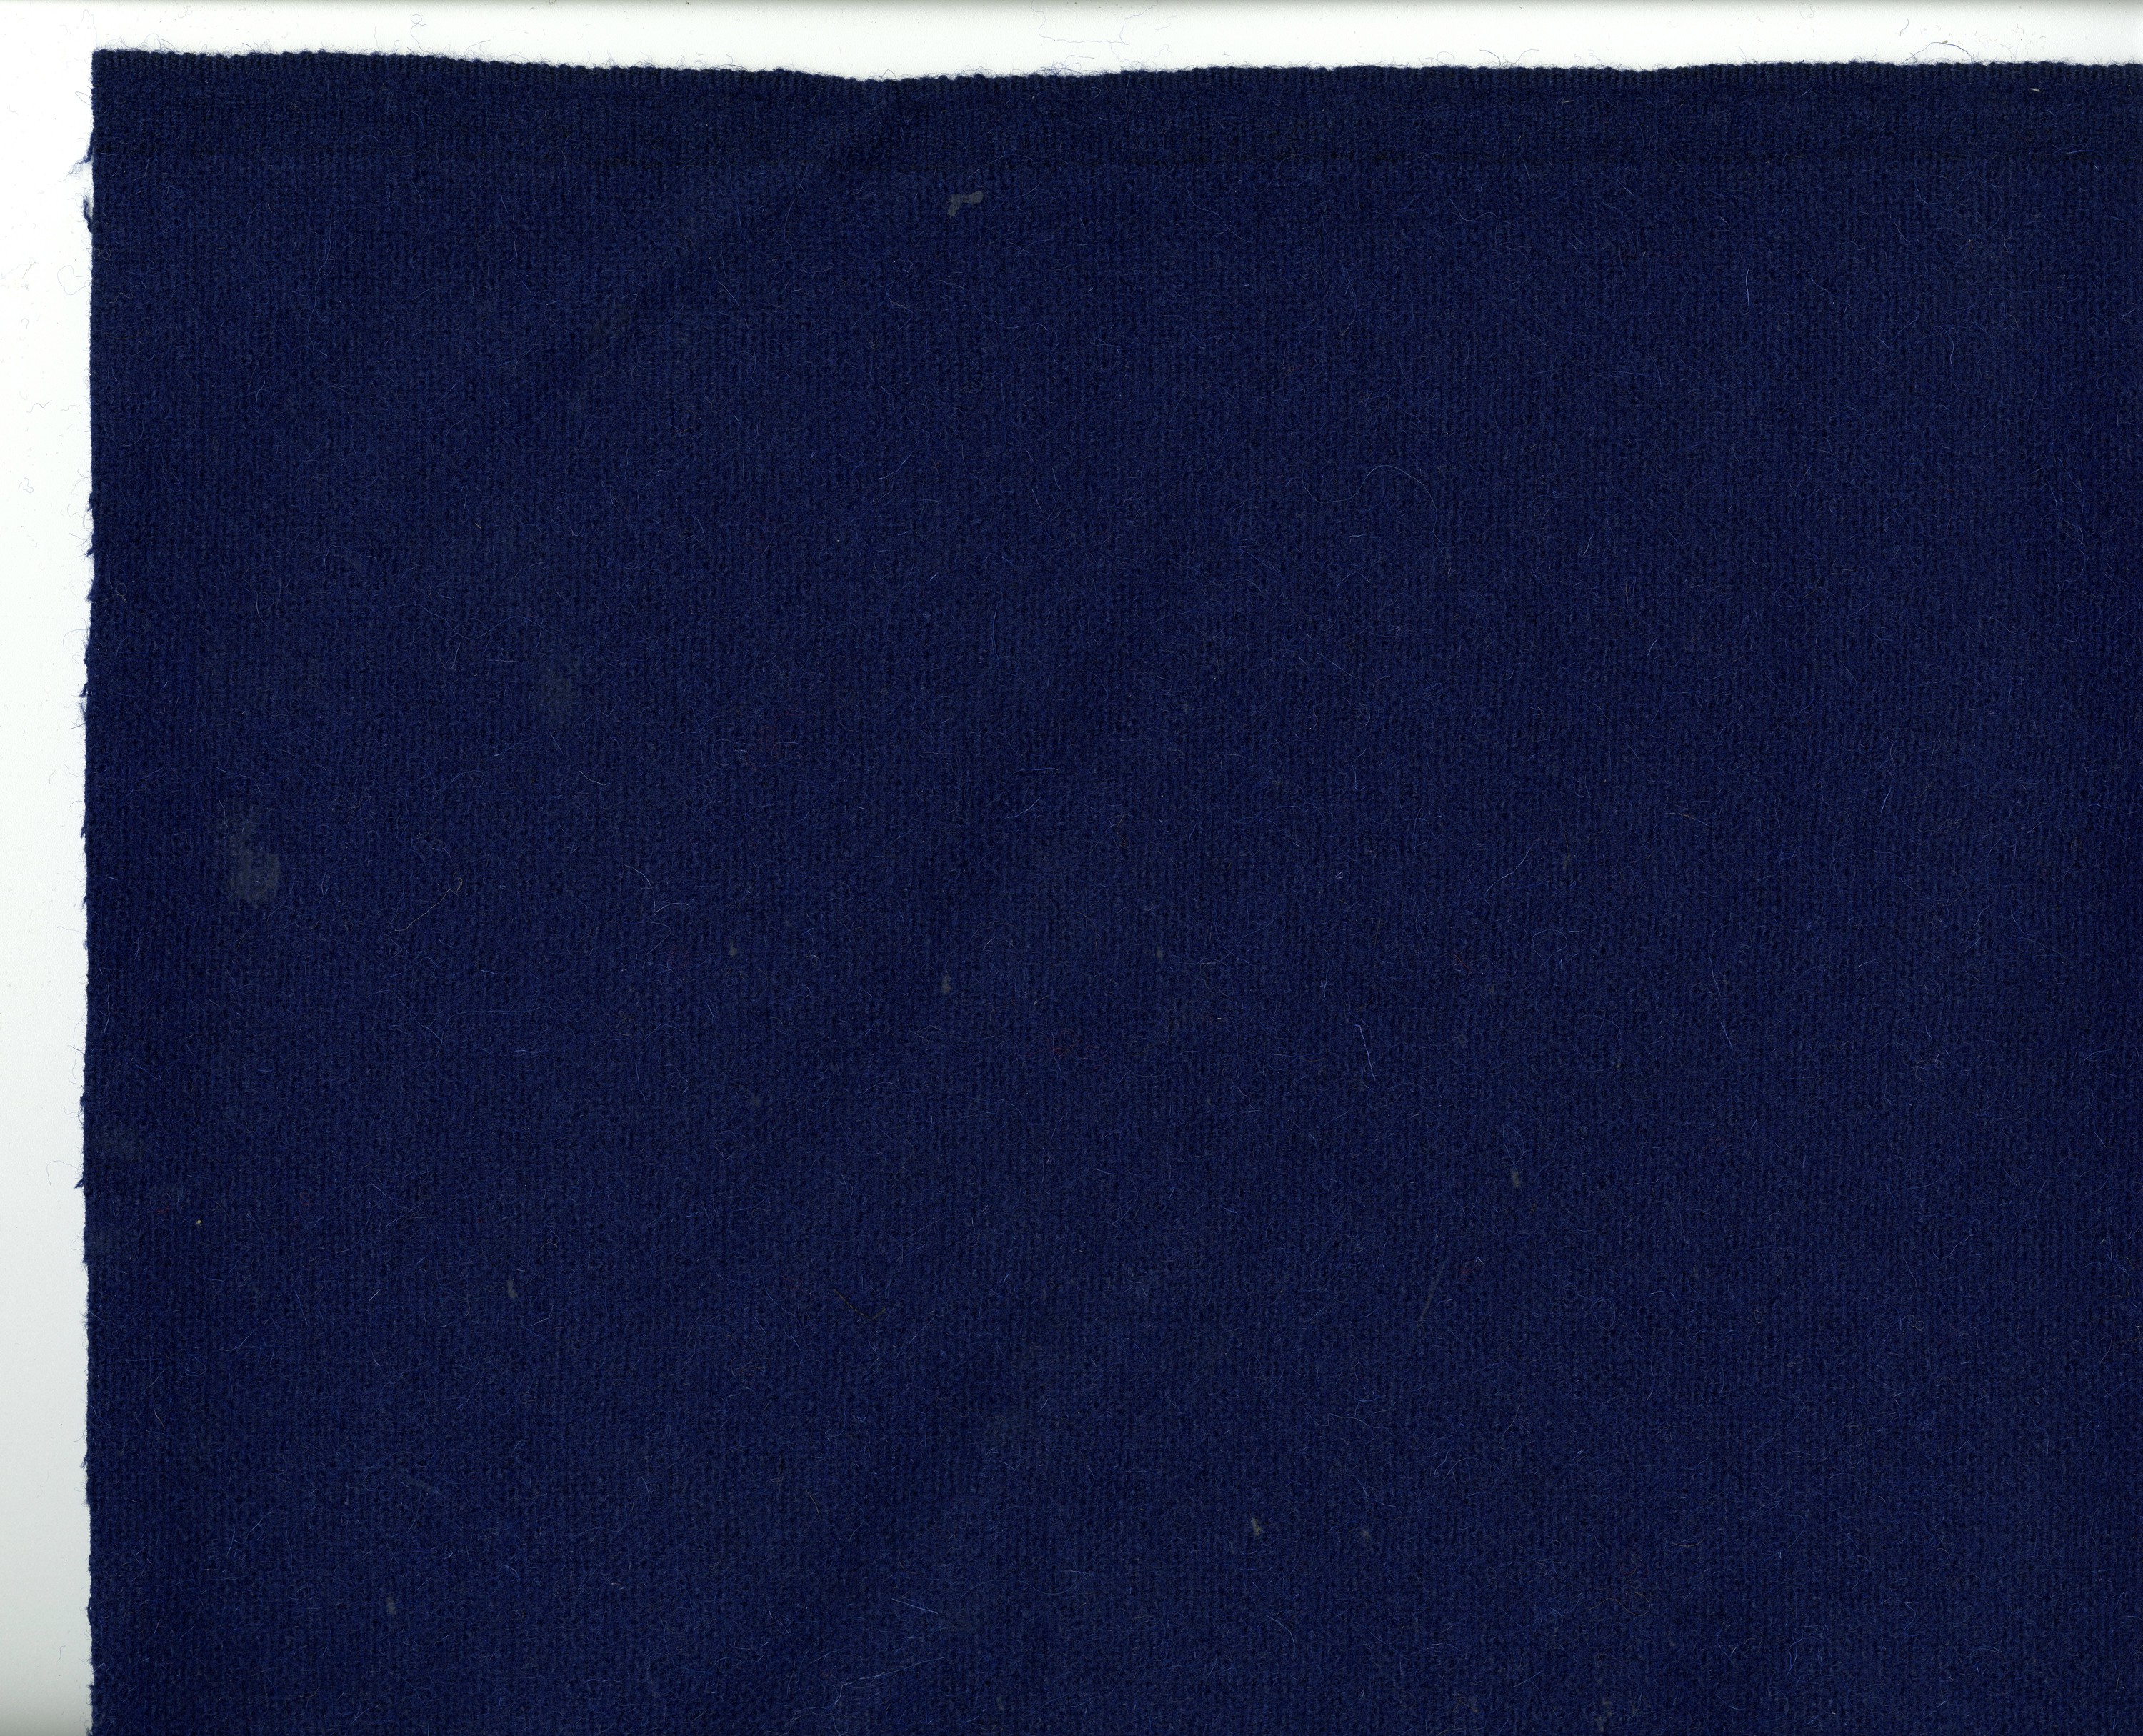 Stoffprobe: Streichgarn-Doppelgewebe, blau (Tuchfabrik Gebr. Pfau RR-R)